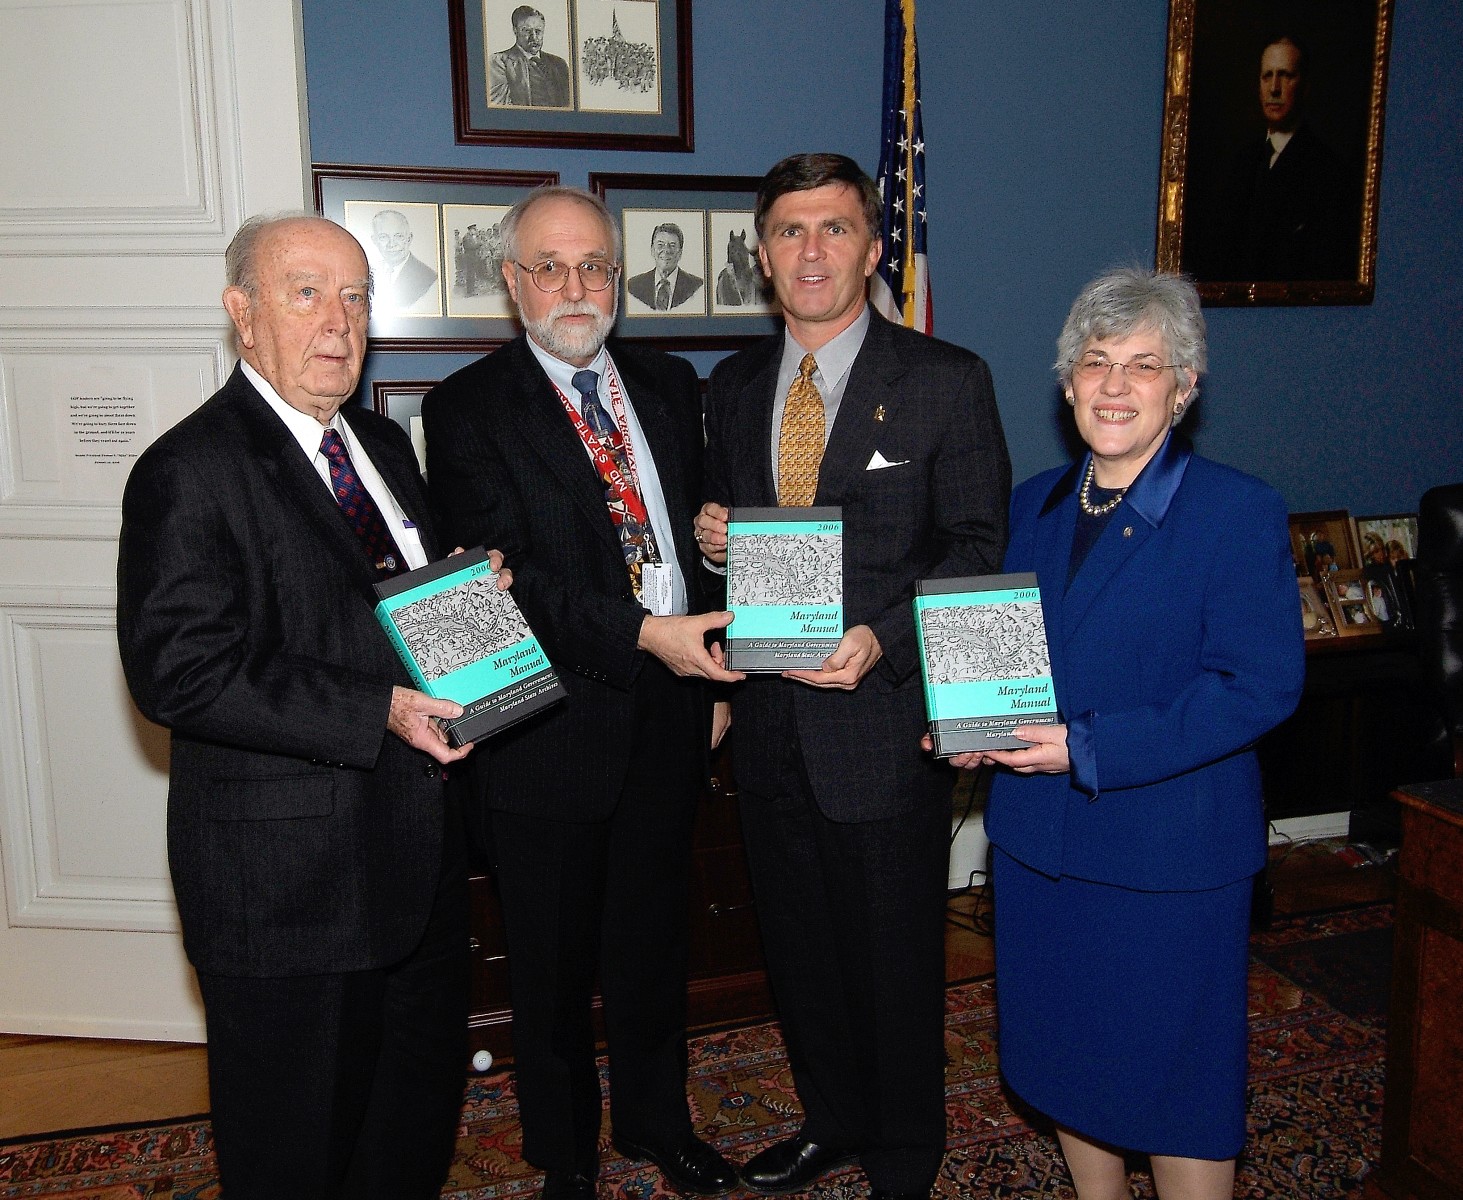 State Archivist Edward C. Papenfuse delivers Manual to Comptroller Schaefer, Governor Ehrlich and Treasurer Kopp